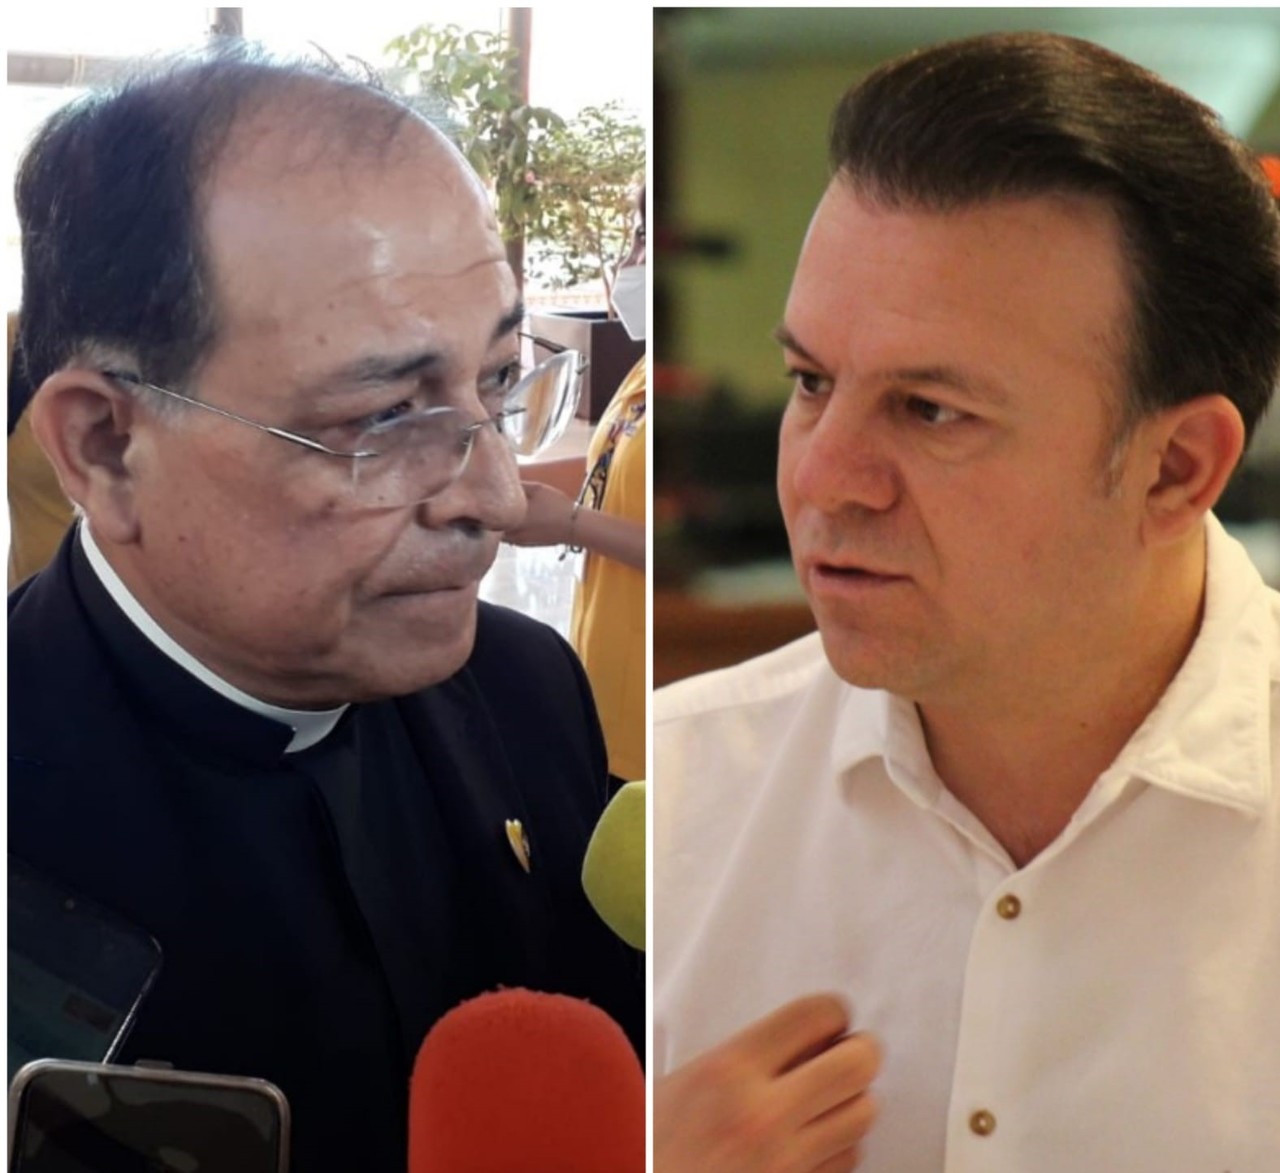 El Vicario de la Diócesis de Gómez Palacio calificó como 'sorpresita' el decreto que emitió el gobernador a favor del matrimonio igualitario, previo a la aprobación por mayoría en el Congreso.